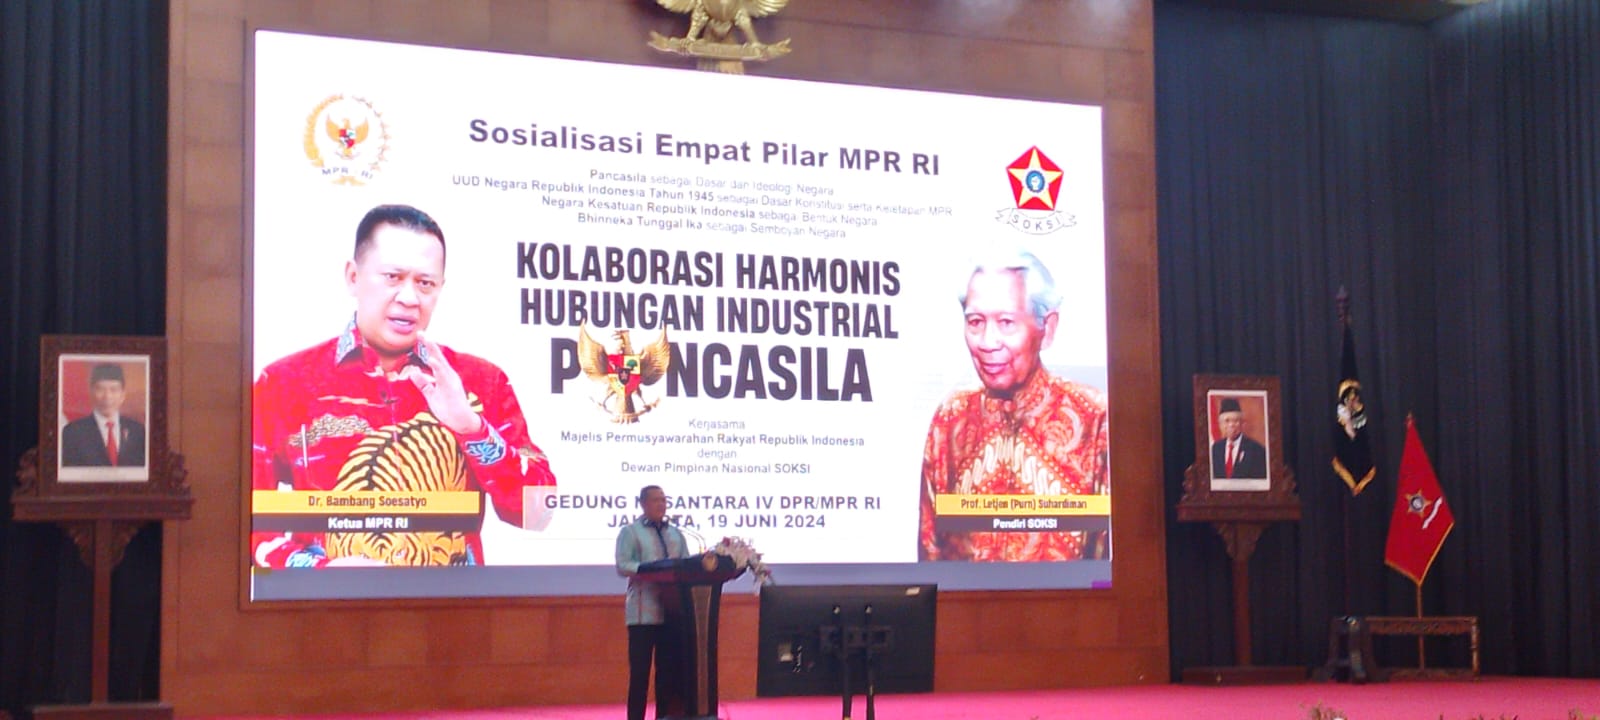 MPR RI gelar diskusi Sosialisasi Empat Pilar Kolaborasi Harmonis Hubungan Industrial Pancasila dengan SOKSI (Ashar/SinPo.id)